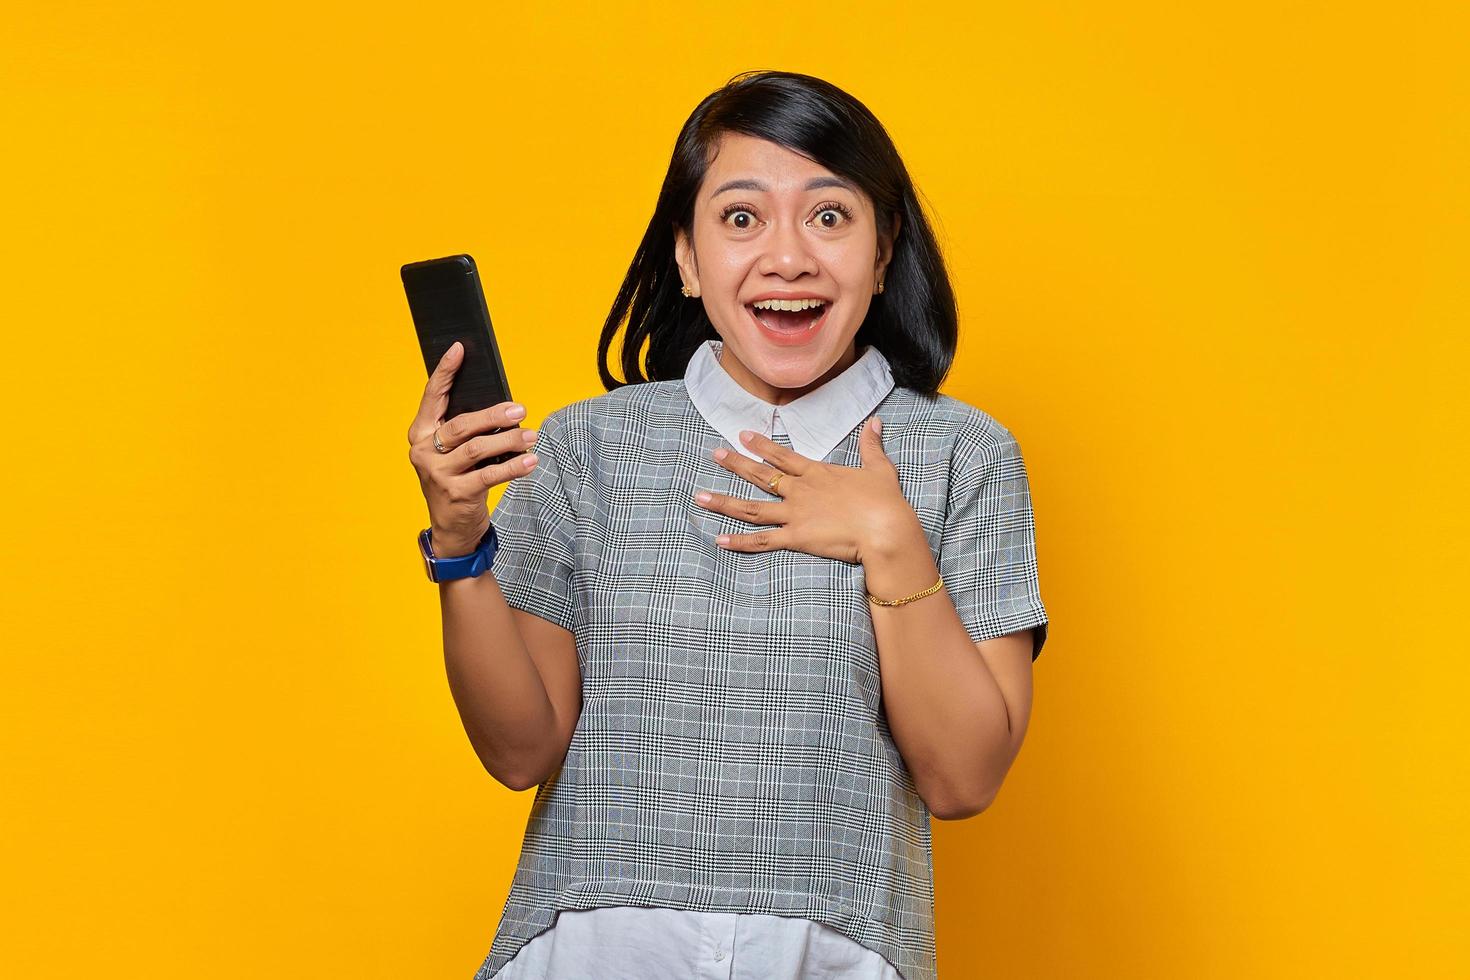 vrolijke jonge aziatische vrouw die mobiele telefoon vasthoudt en handpalmen op de borst zet over gele achtergrond foto